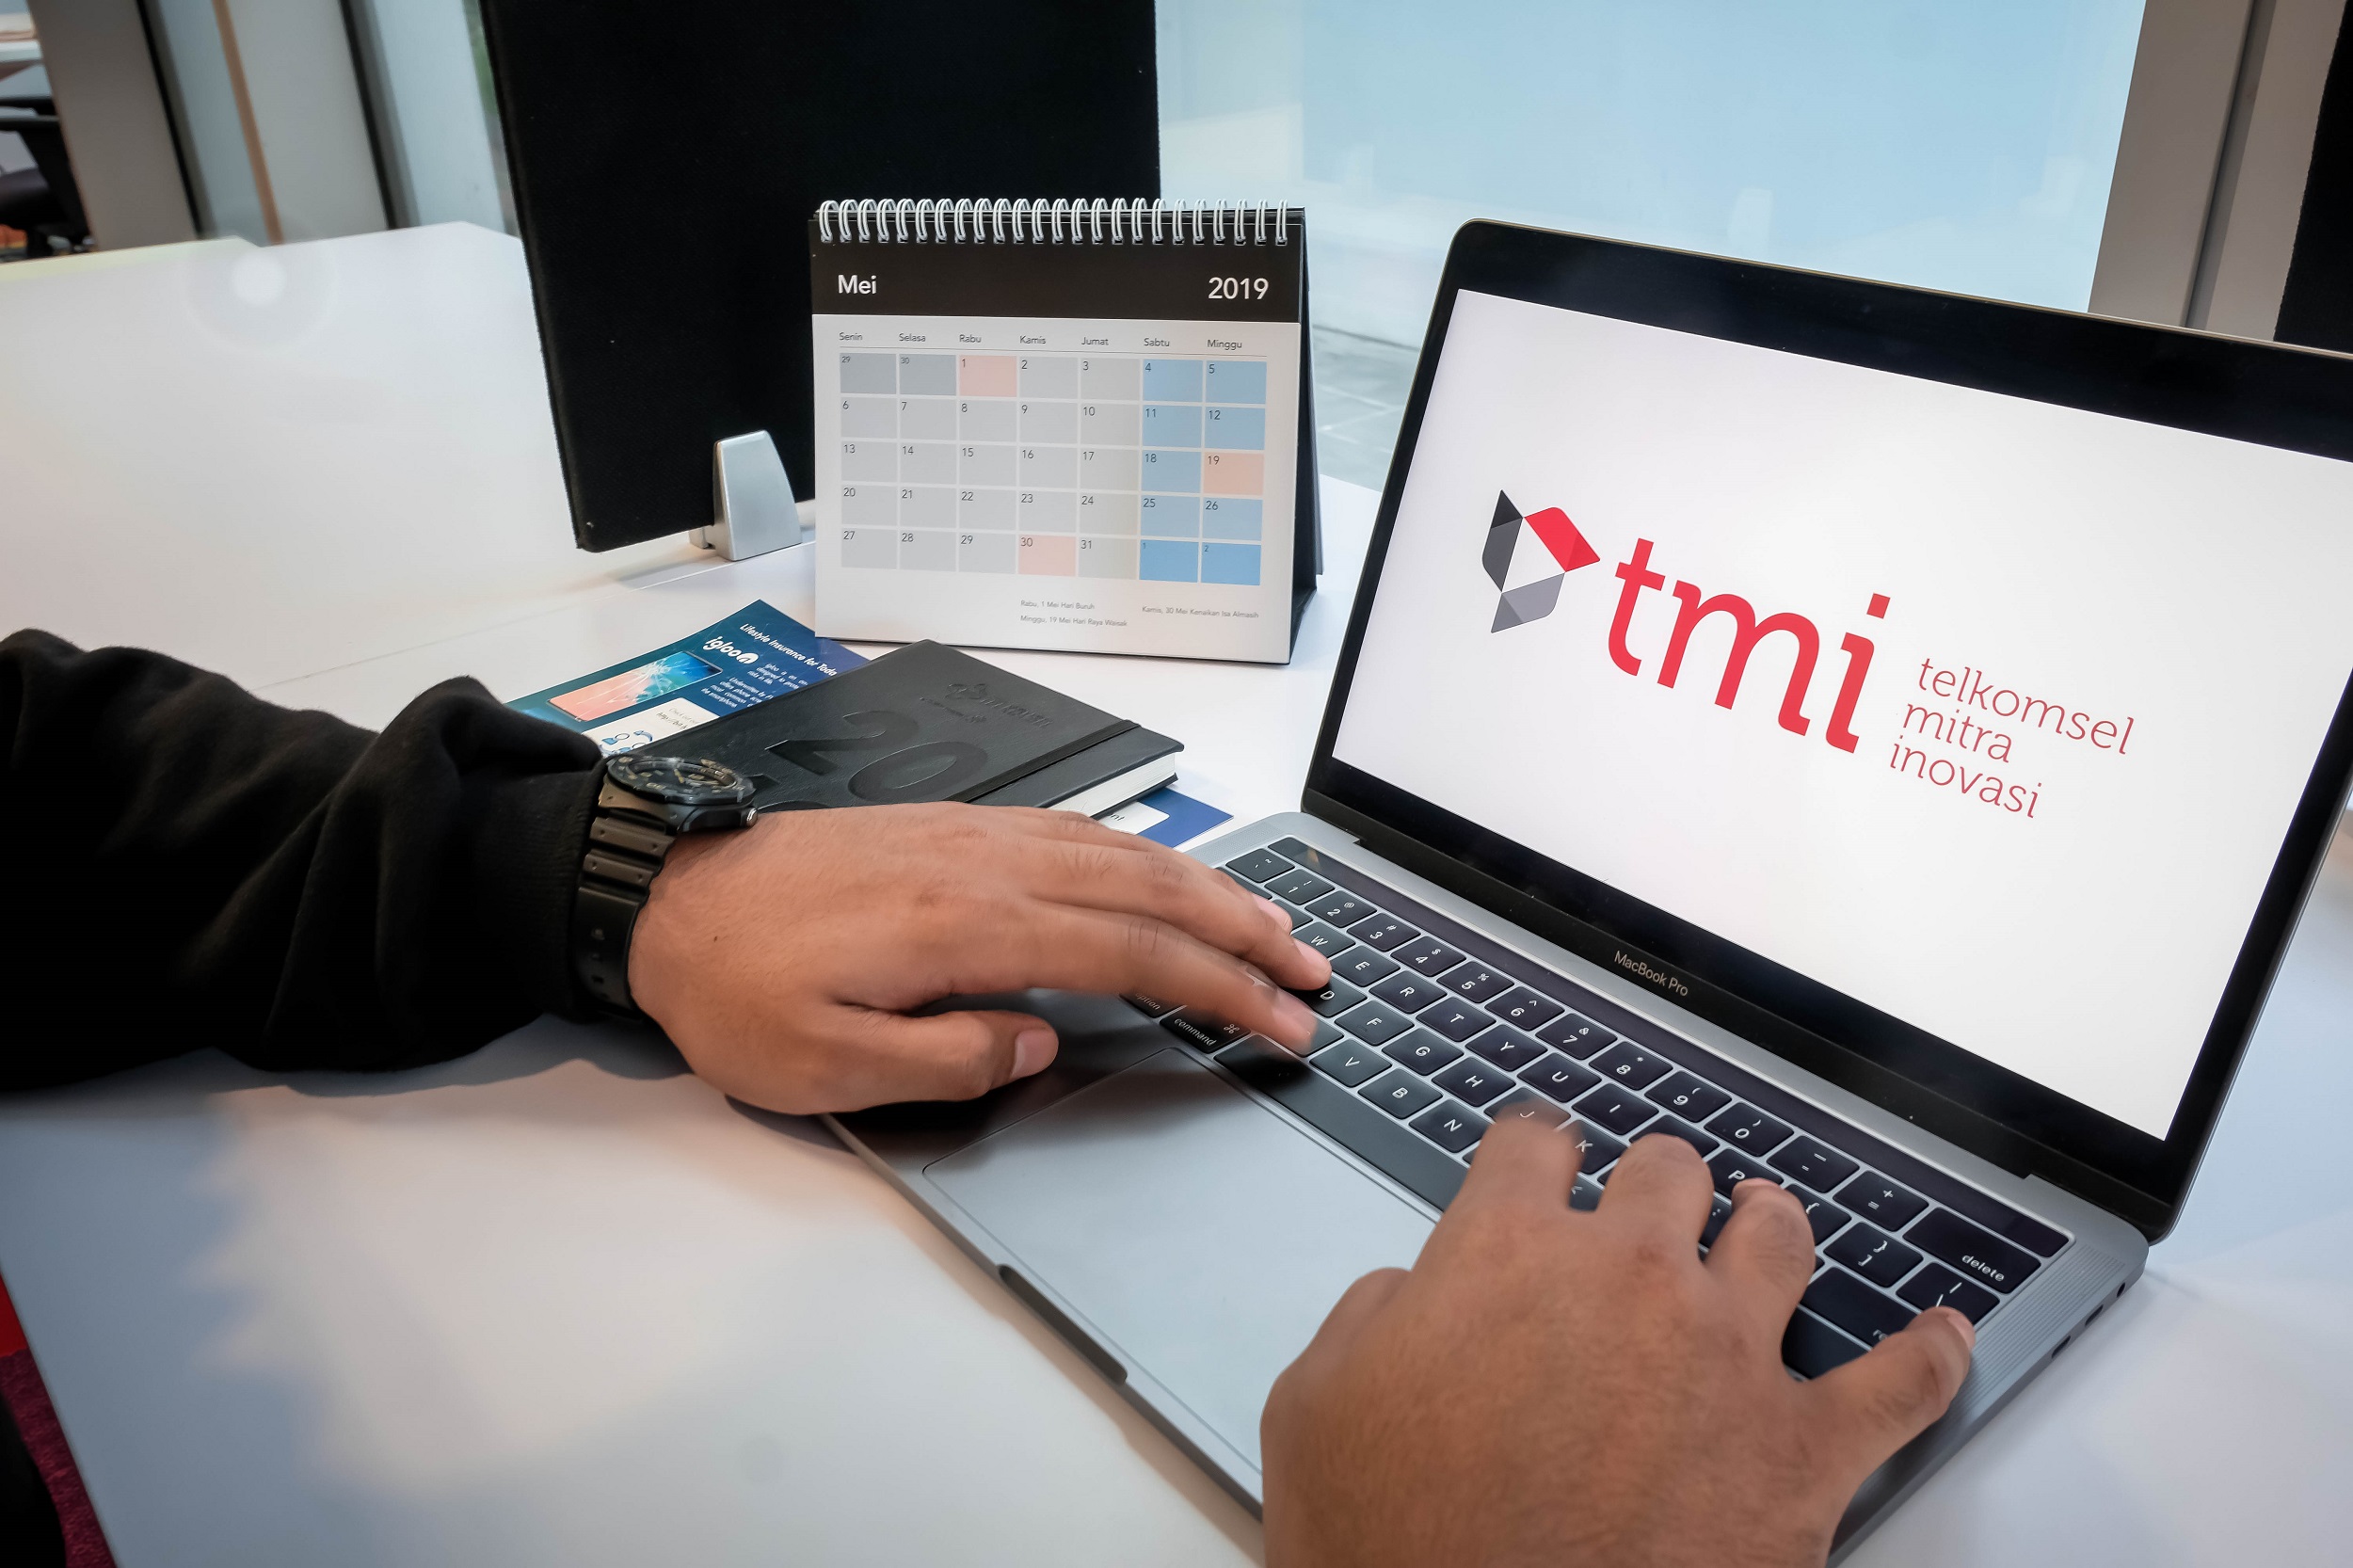 Ilustrasi: Telkomsel mempertegas komitmennya untuk mengakselerasi kemajuan negeri dengan  memulai aksi di bidang strategic investments menyentuh perkembangan ekosistem teknologi Indonesia pada sektor teknologi, media dan telekomunikasi melalui anak perusahaan baru bernama Telkomsel Mitra Inovasi (TMI).   